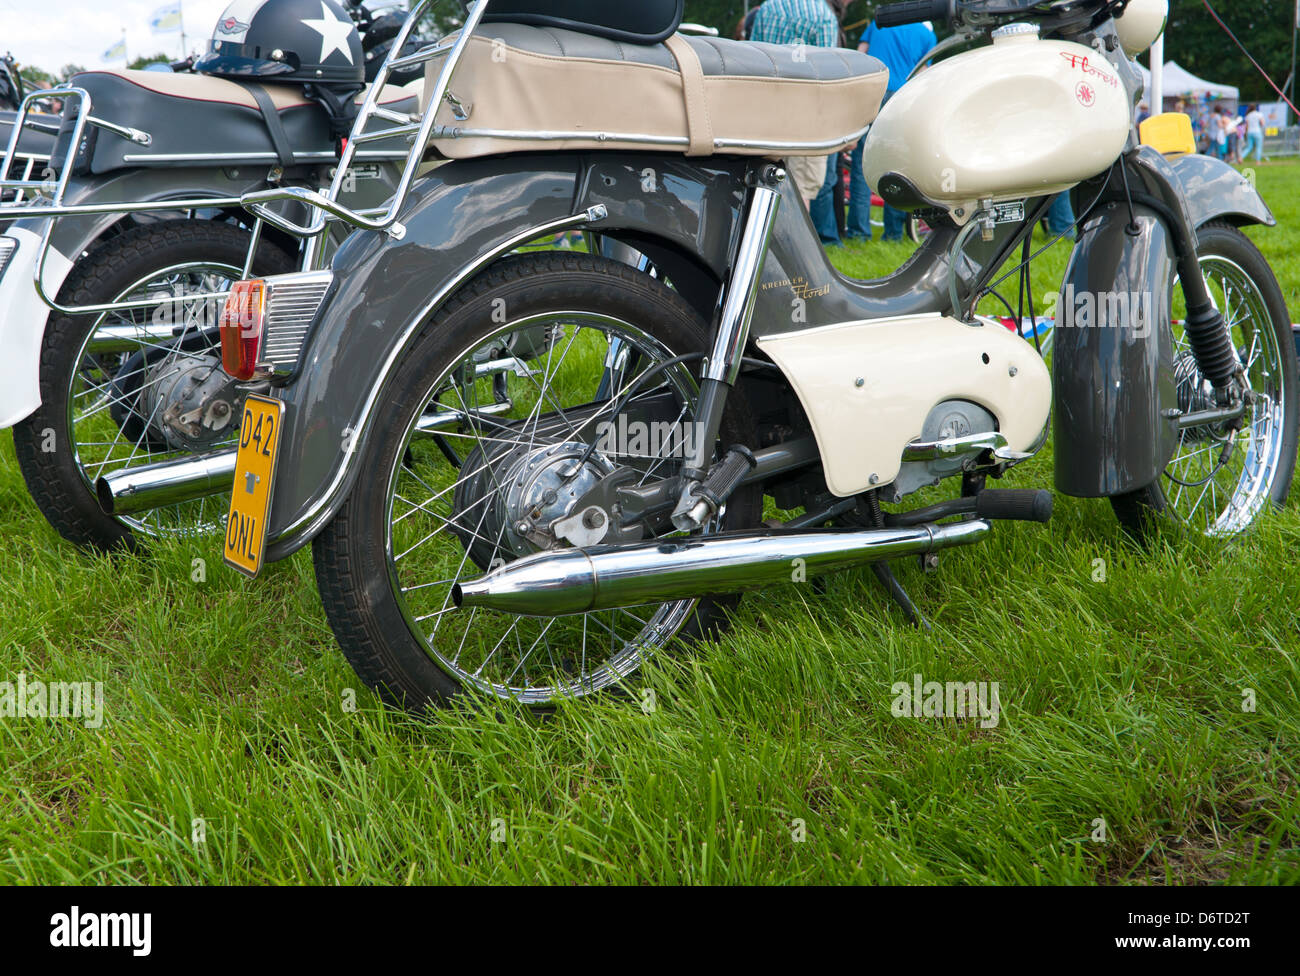 Kreidler y zundapp oldtimer ciclomotores en una reunión en Twenterand, Holanda el 30 de junio de 2012 Foto de stock